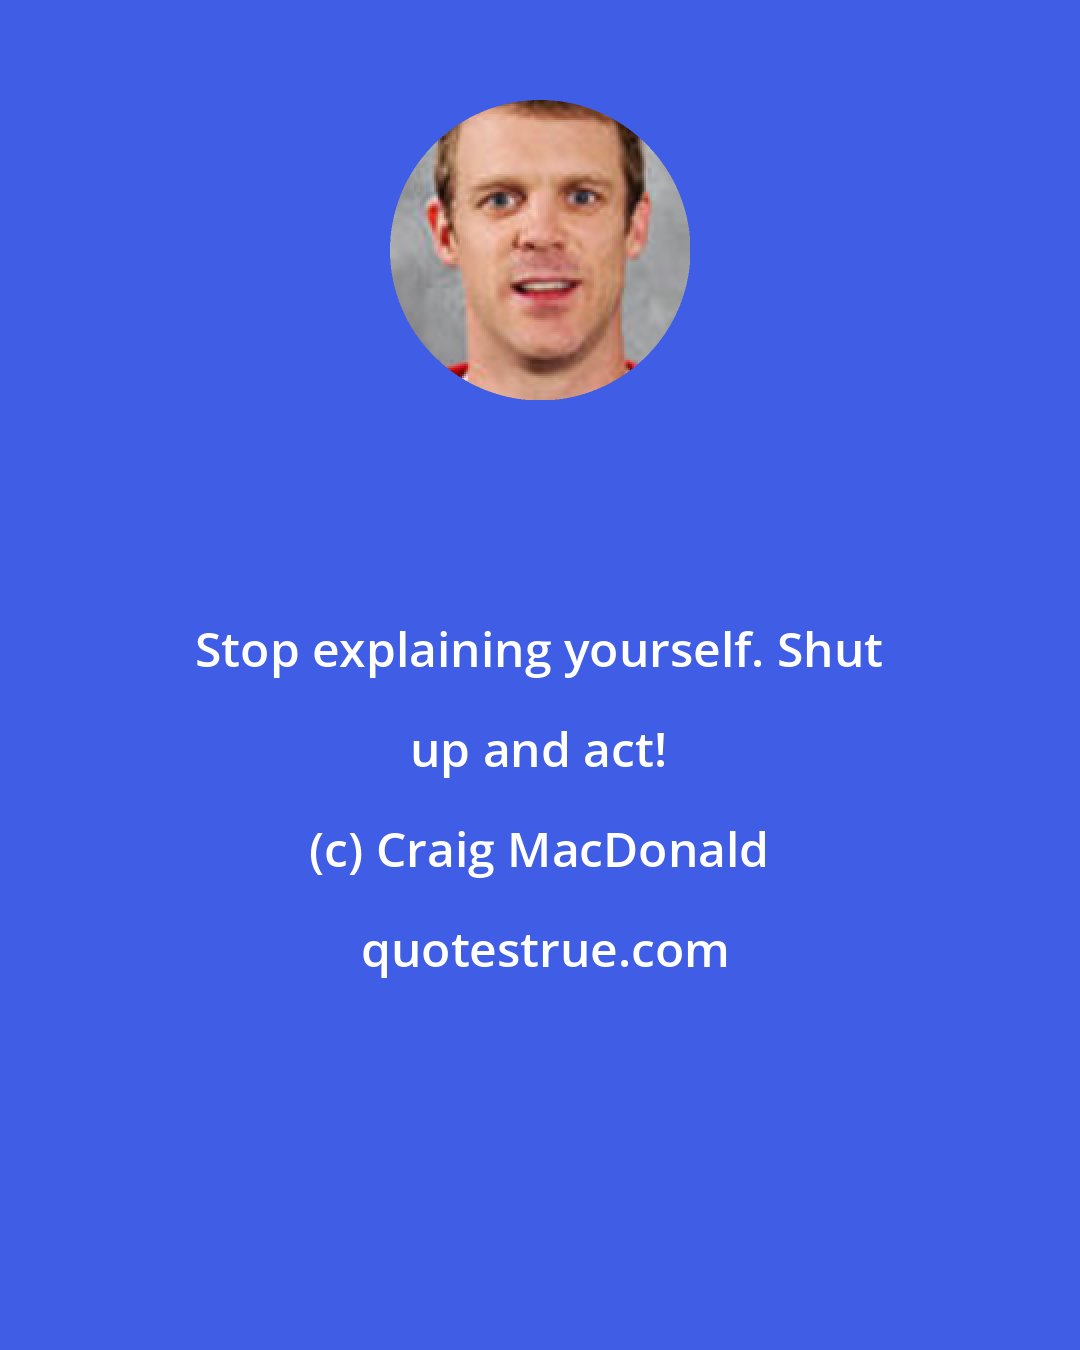 Craig MacDonald: Stop explaining yourself. Shut up and act!